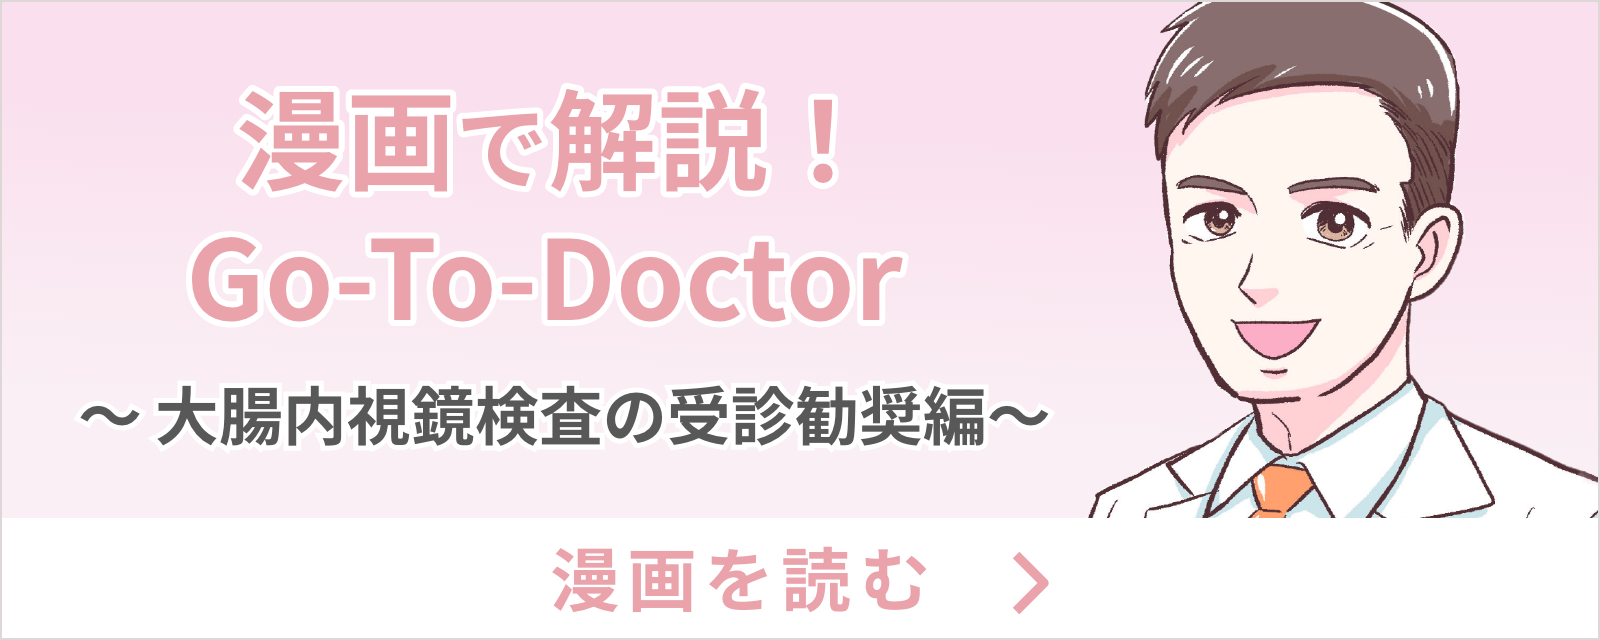 漫画で解説！go-to-doctor〜大腸内視鏡編〜漫画を読む